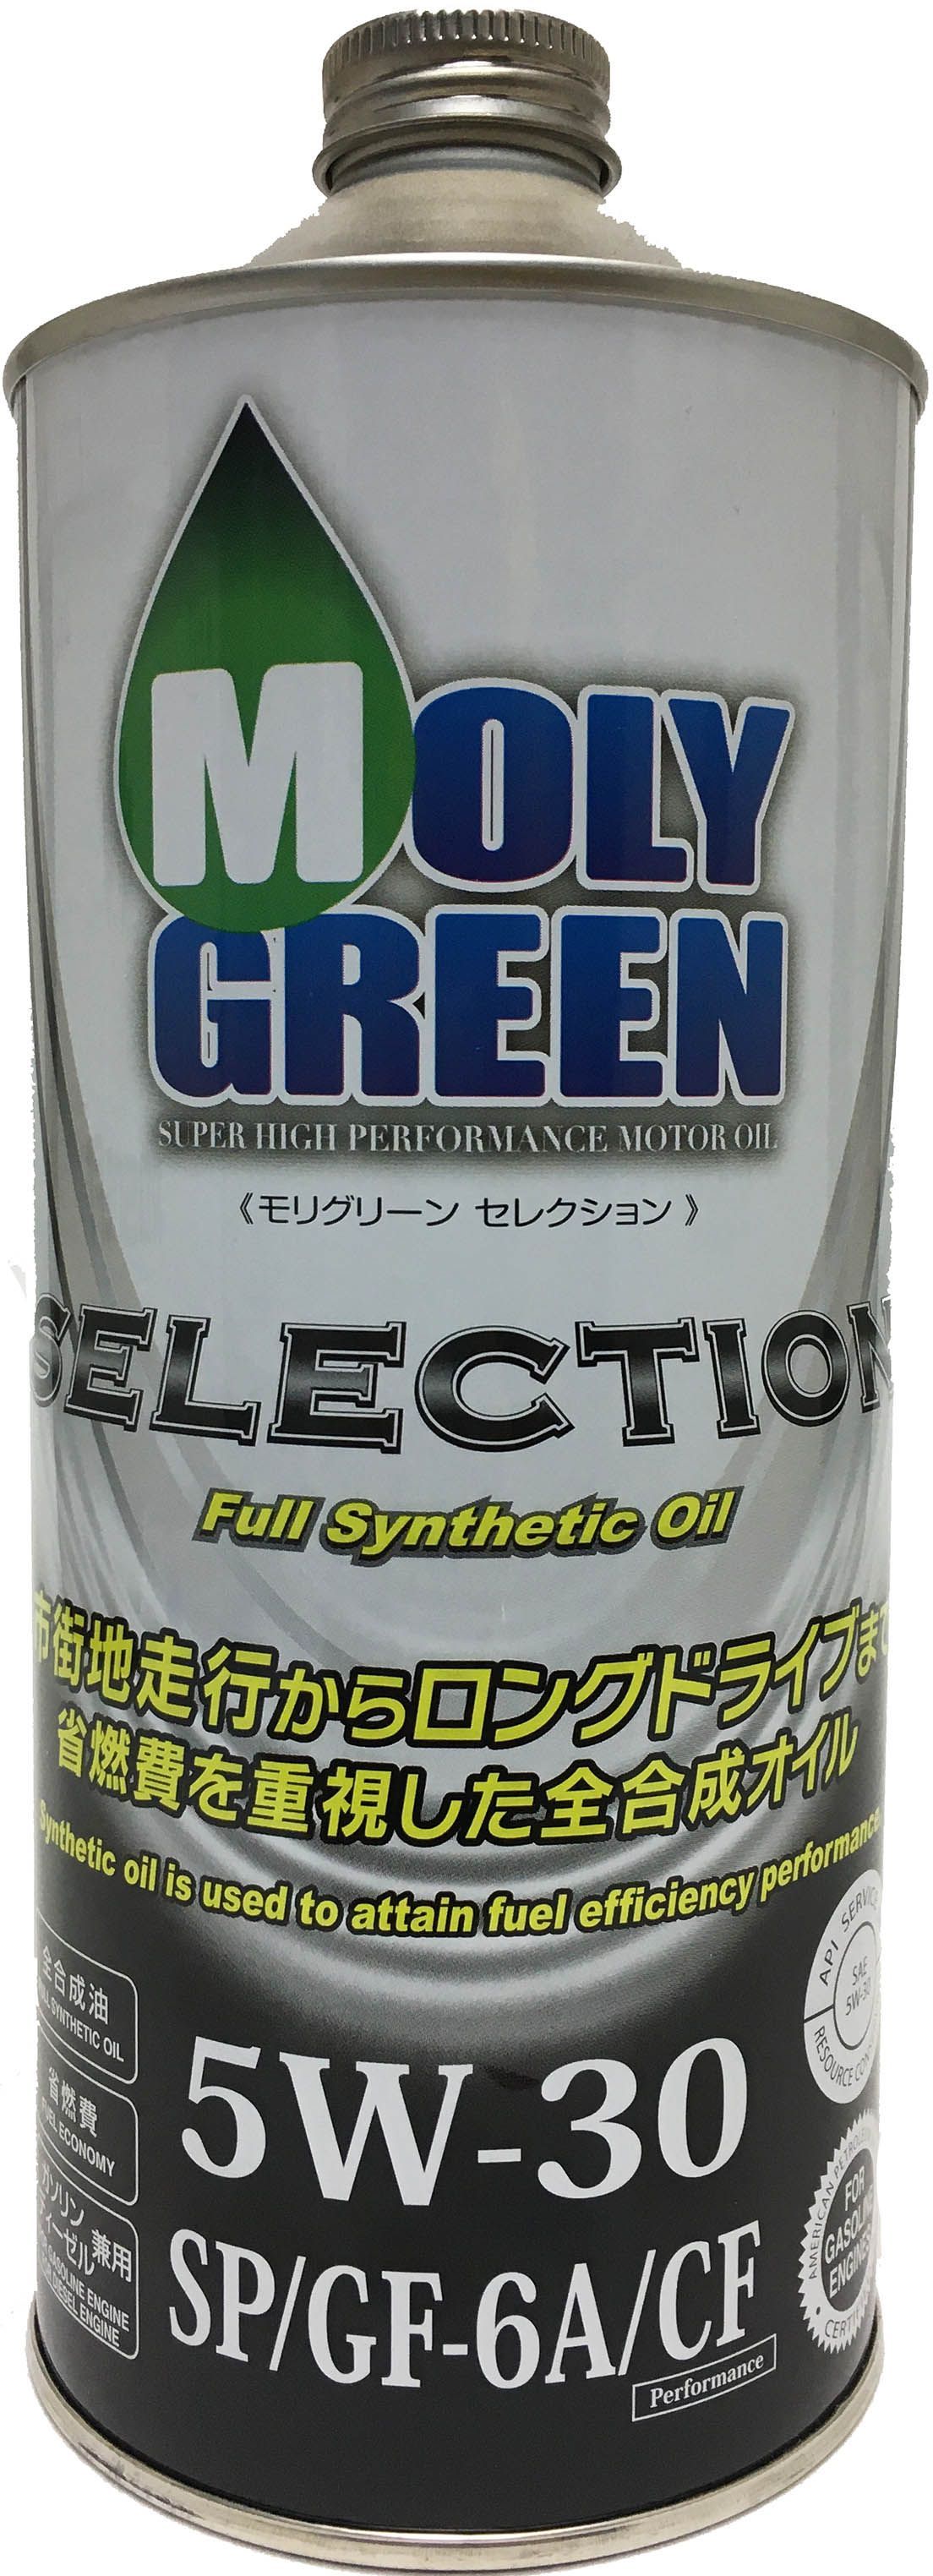 Моторное масло моли грин 5w30. Молли Грин масло. Moly Green selection 5w30 бочка 200. Японское моторное масло Moly Green. Масло Moly Green крышка.